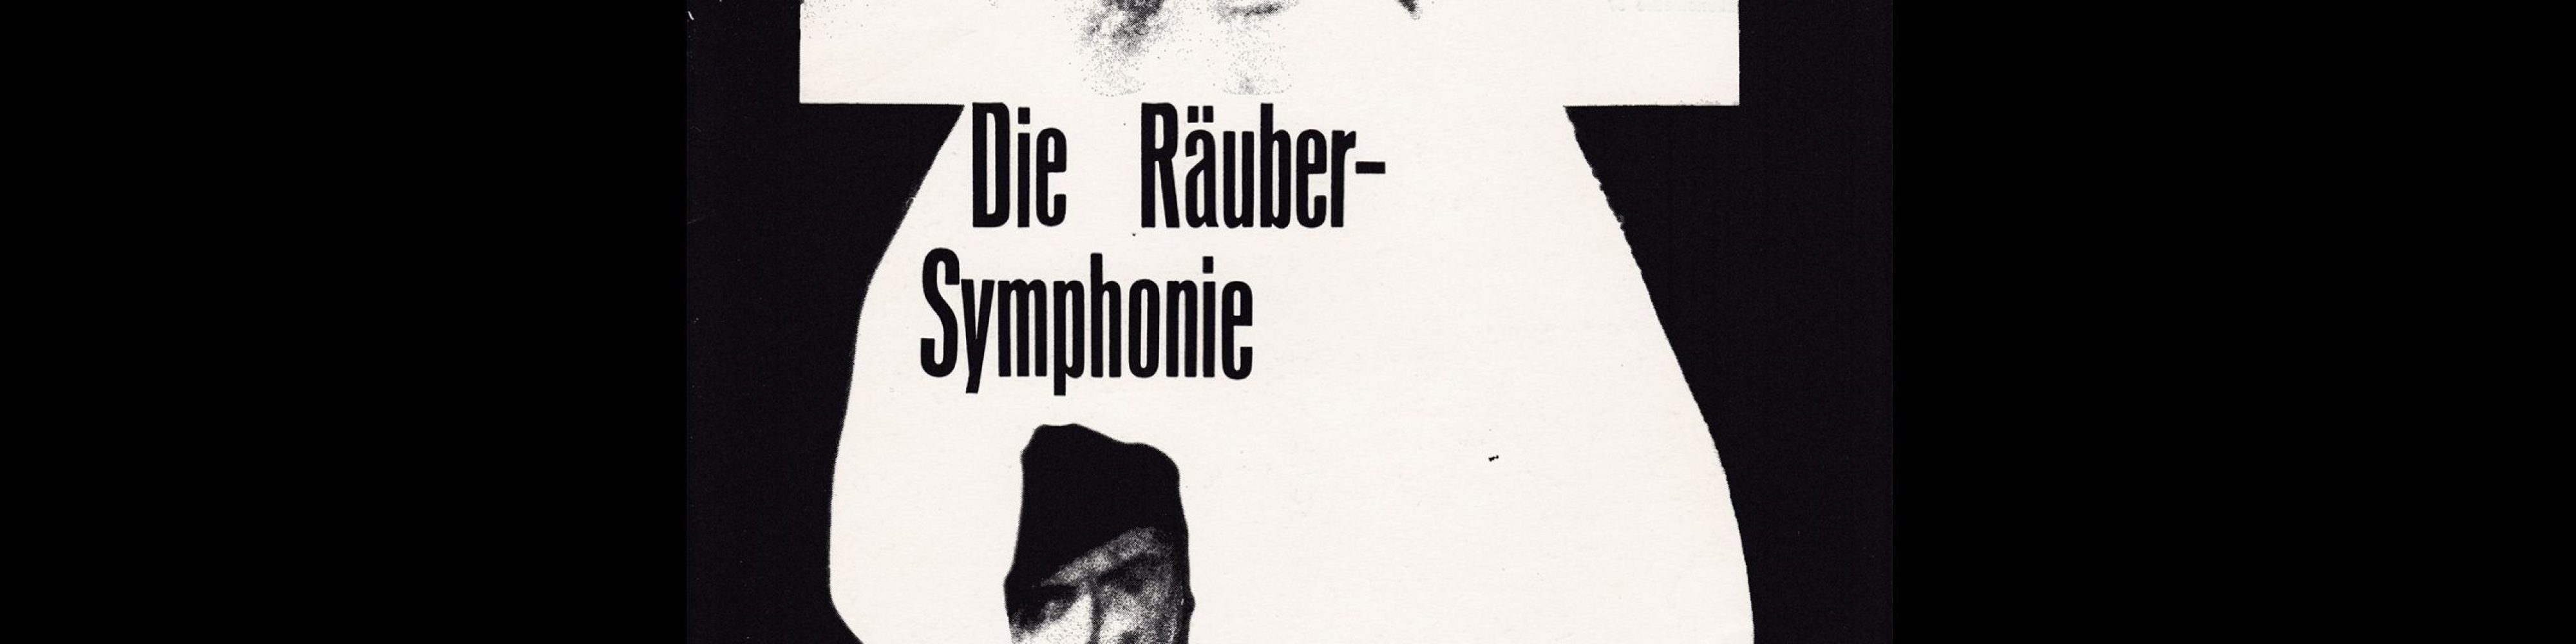 Die Räubersymphonie. Die Kleine Filmkunstreihe 37 designed by Hans Hillmann